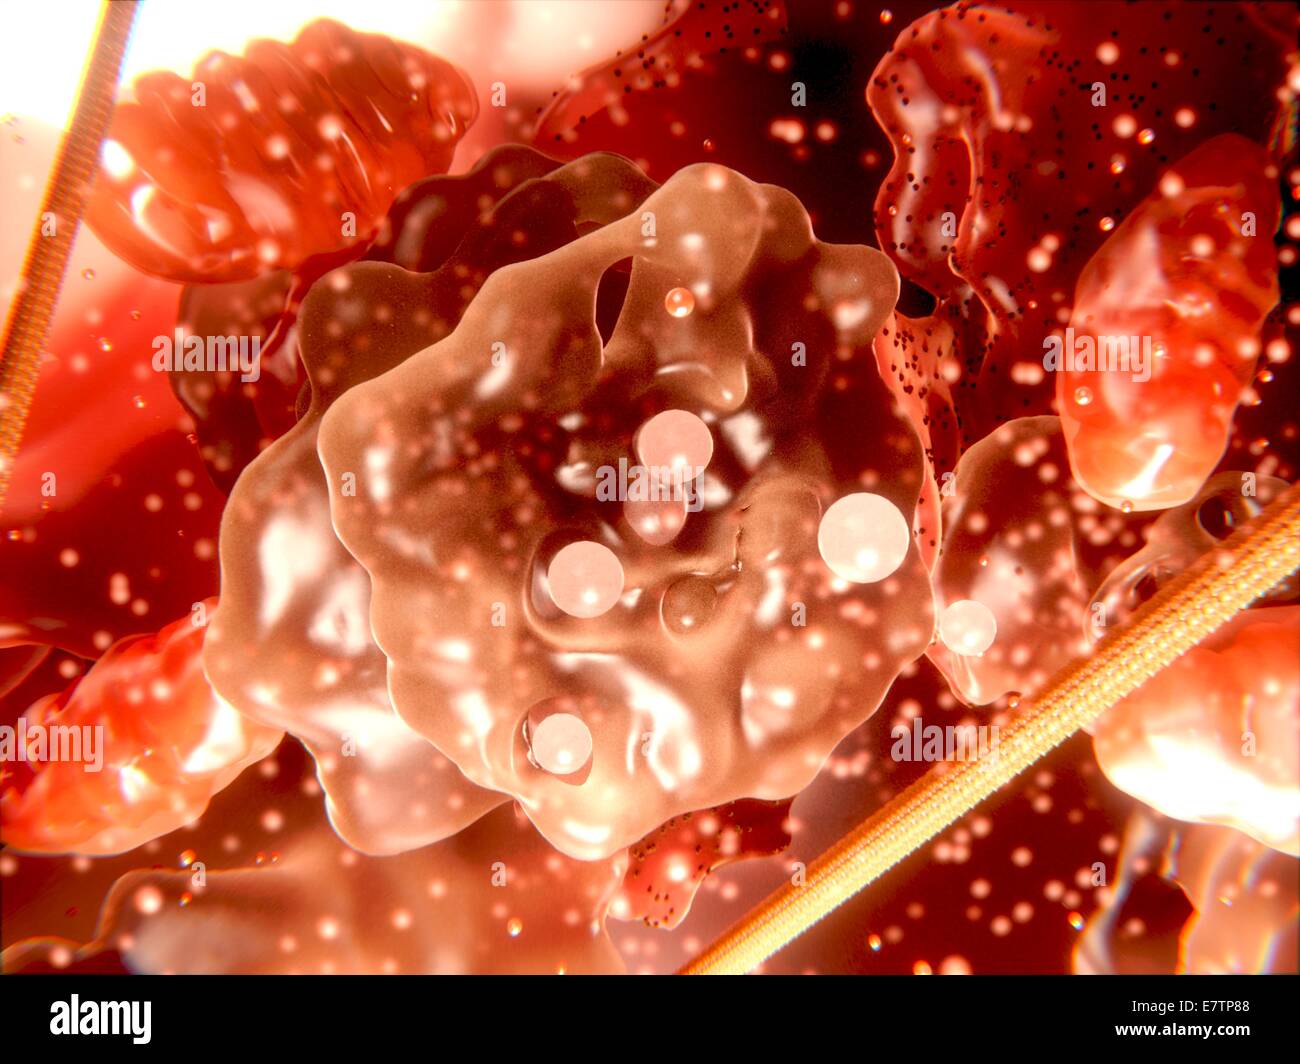 Orgánulos de una célula eucariota, equipo de ilustraciones. En el centro es un órgano de Golgi se excretan vesículas. También se ven las mitocondrias (rojo ovoides) y el retículo endoplásmico rugoso (rojo con manchas negras). Foto de stock